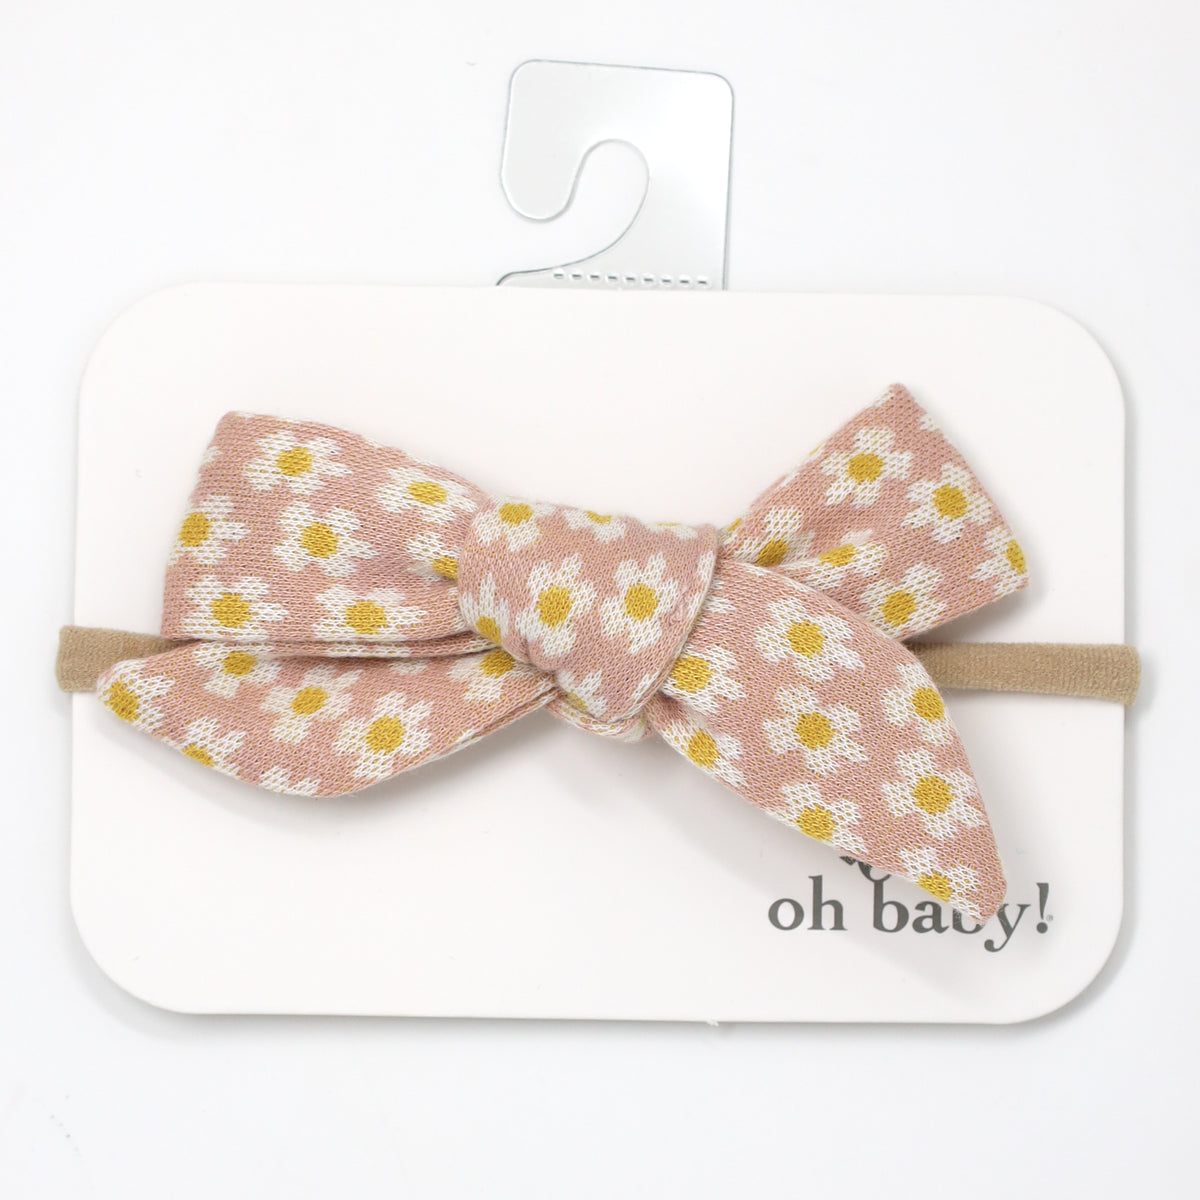 oh baby! Mini Daisies Double Knit Tie Bow Nylon Headband - Blush Cream